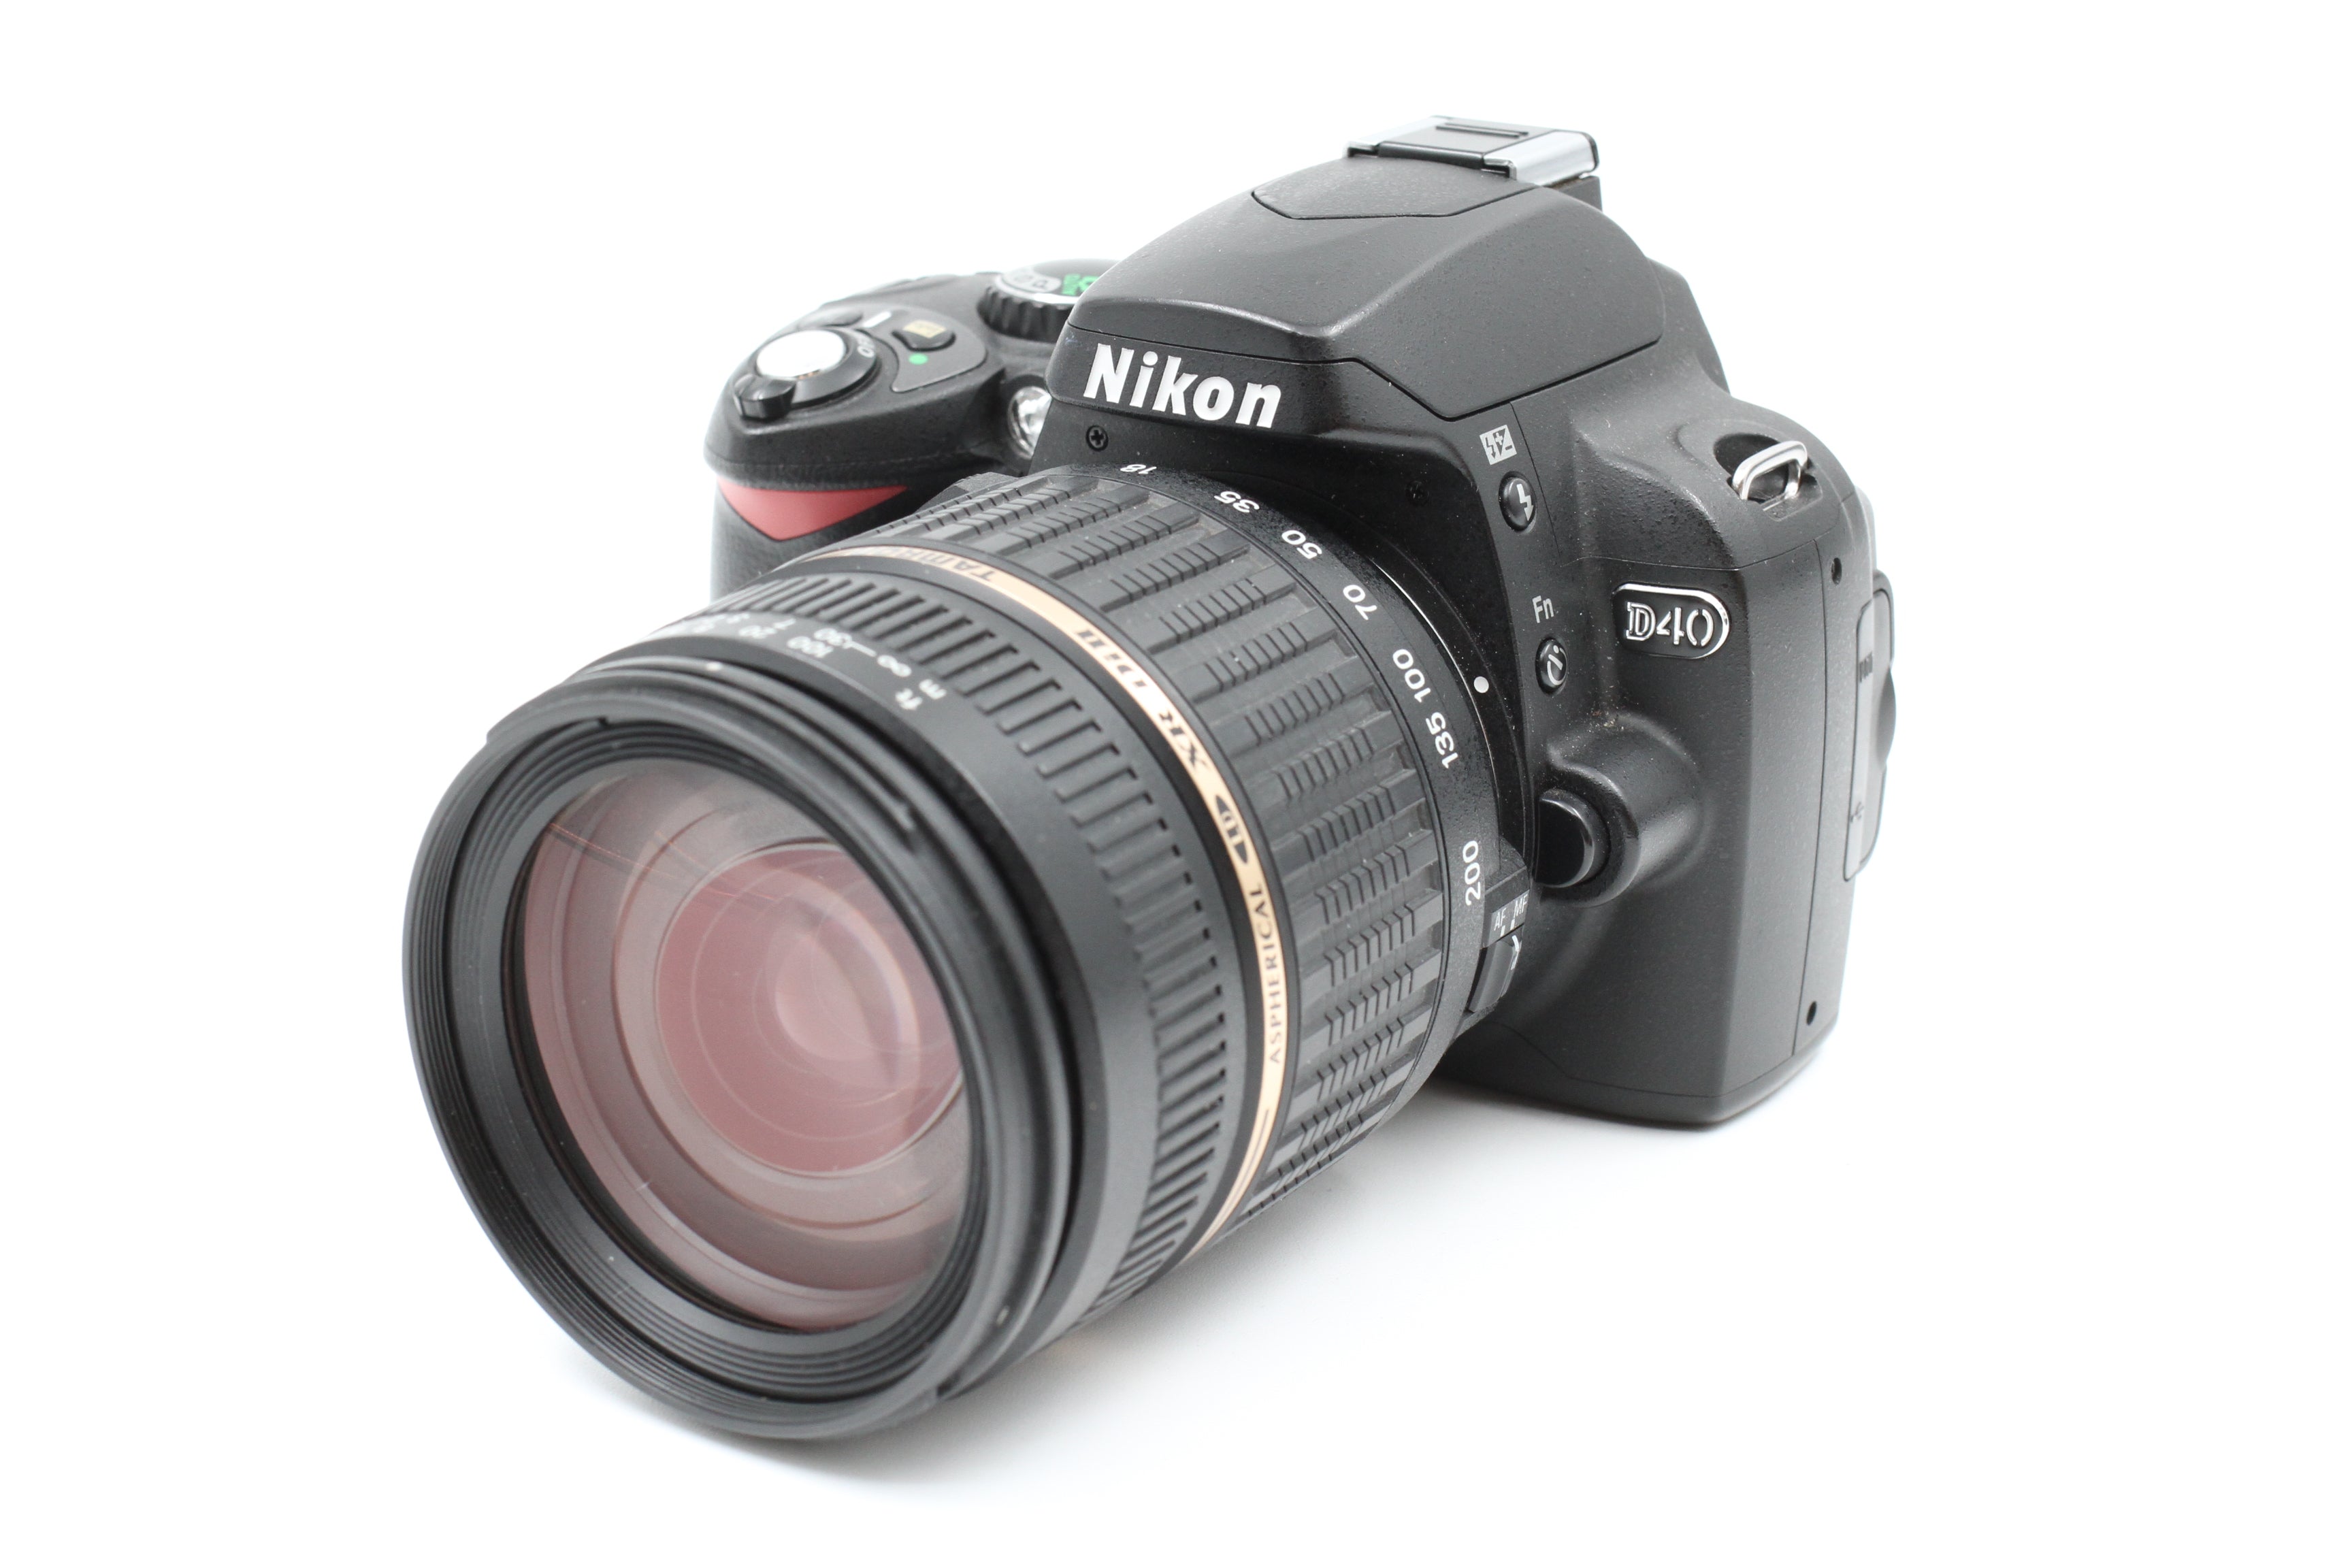 Nikon D40 DSLR Body w/ Tamron 18-200mm, Boxed